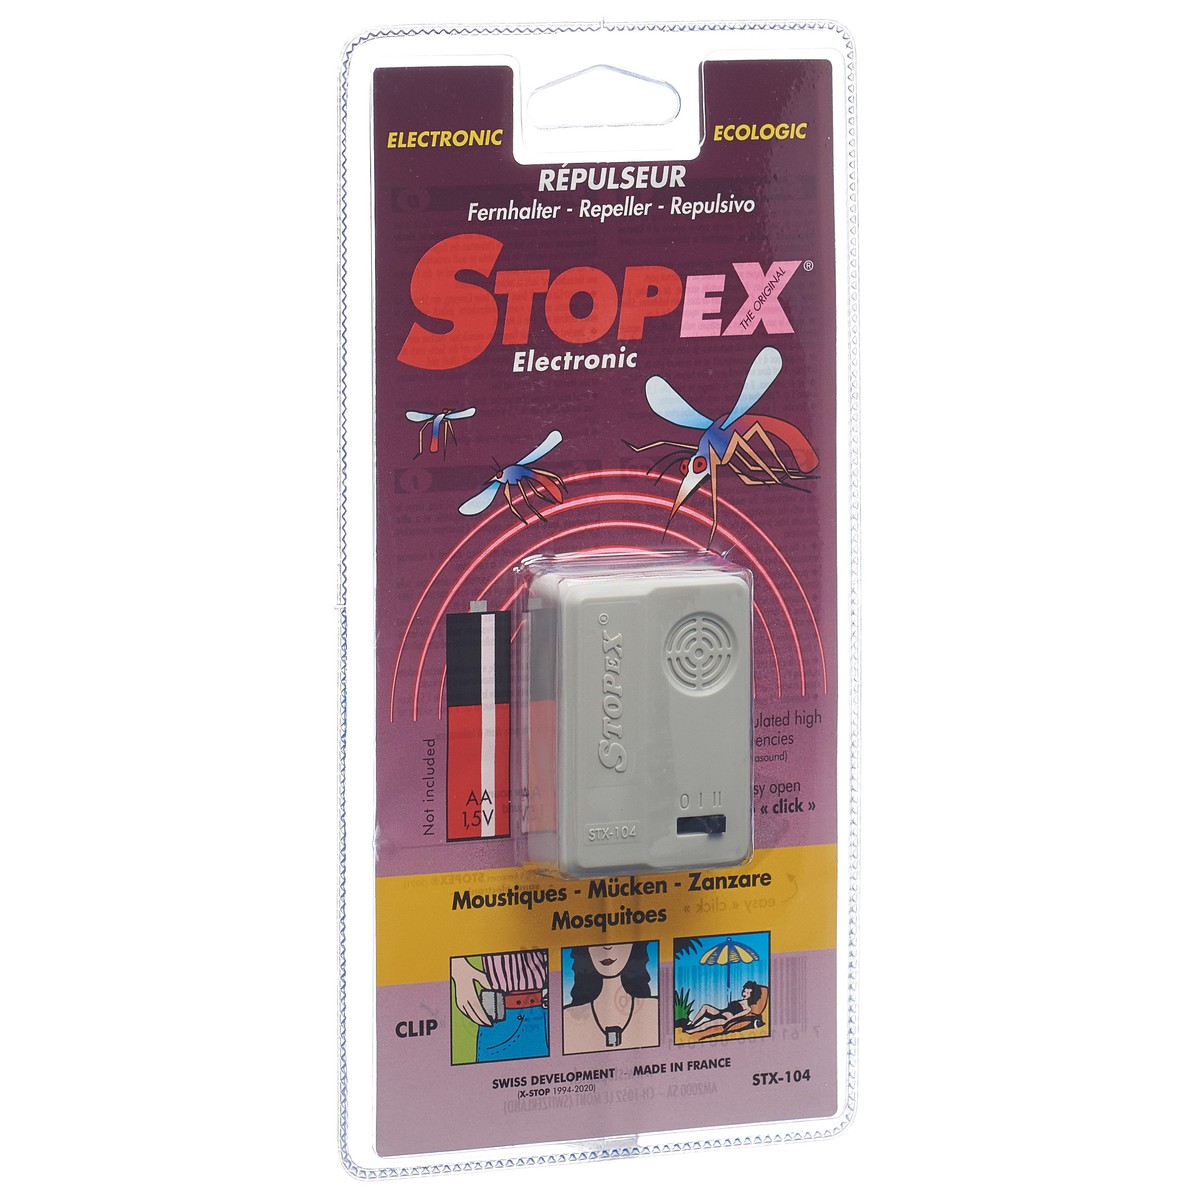   anti Moustiques STOPEX STX104 appareil électronique écologique anti moustiques  23x11.4x2.2cm